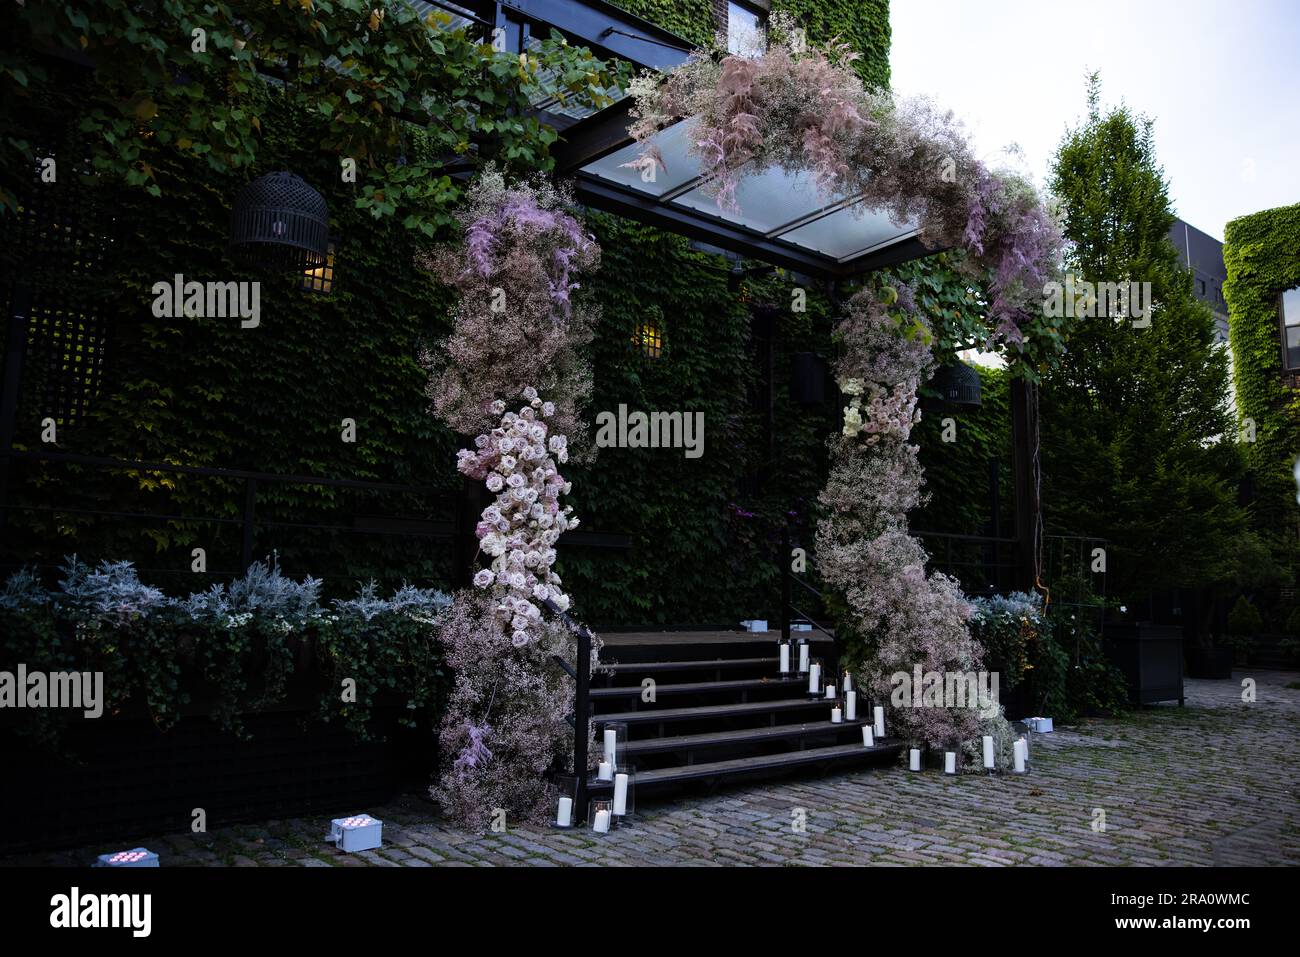 Wunderschöne Blumenarrangements mit Blumenstrauß-Hochzeit mit Rosen, Kerzen und dem Atem des Babys in einem üppigen botanischen Garten mit Treppe und Bogen. Stockfoto